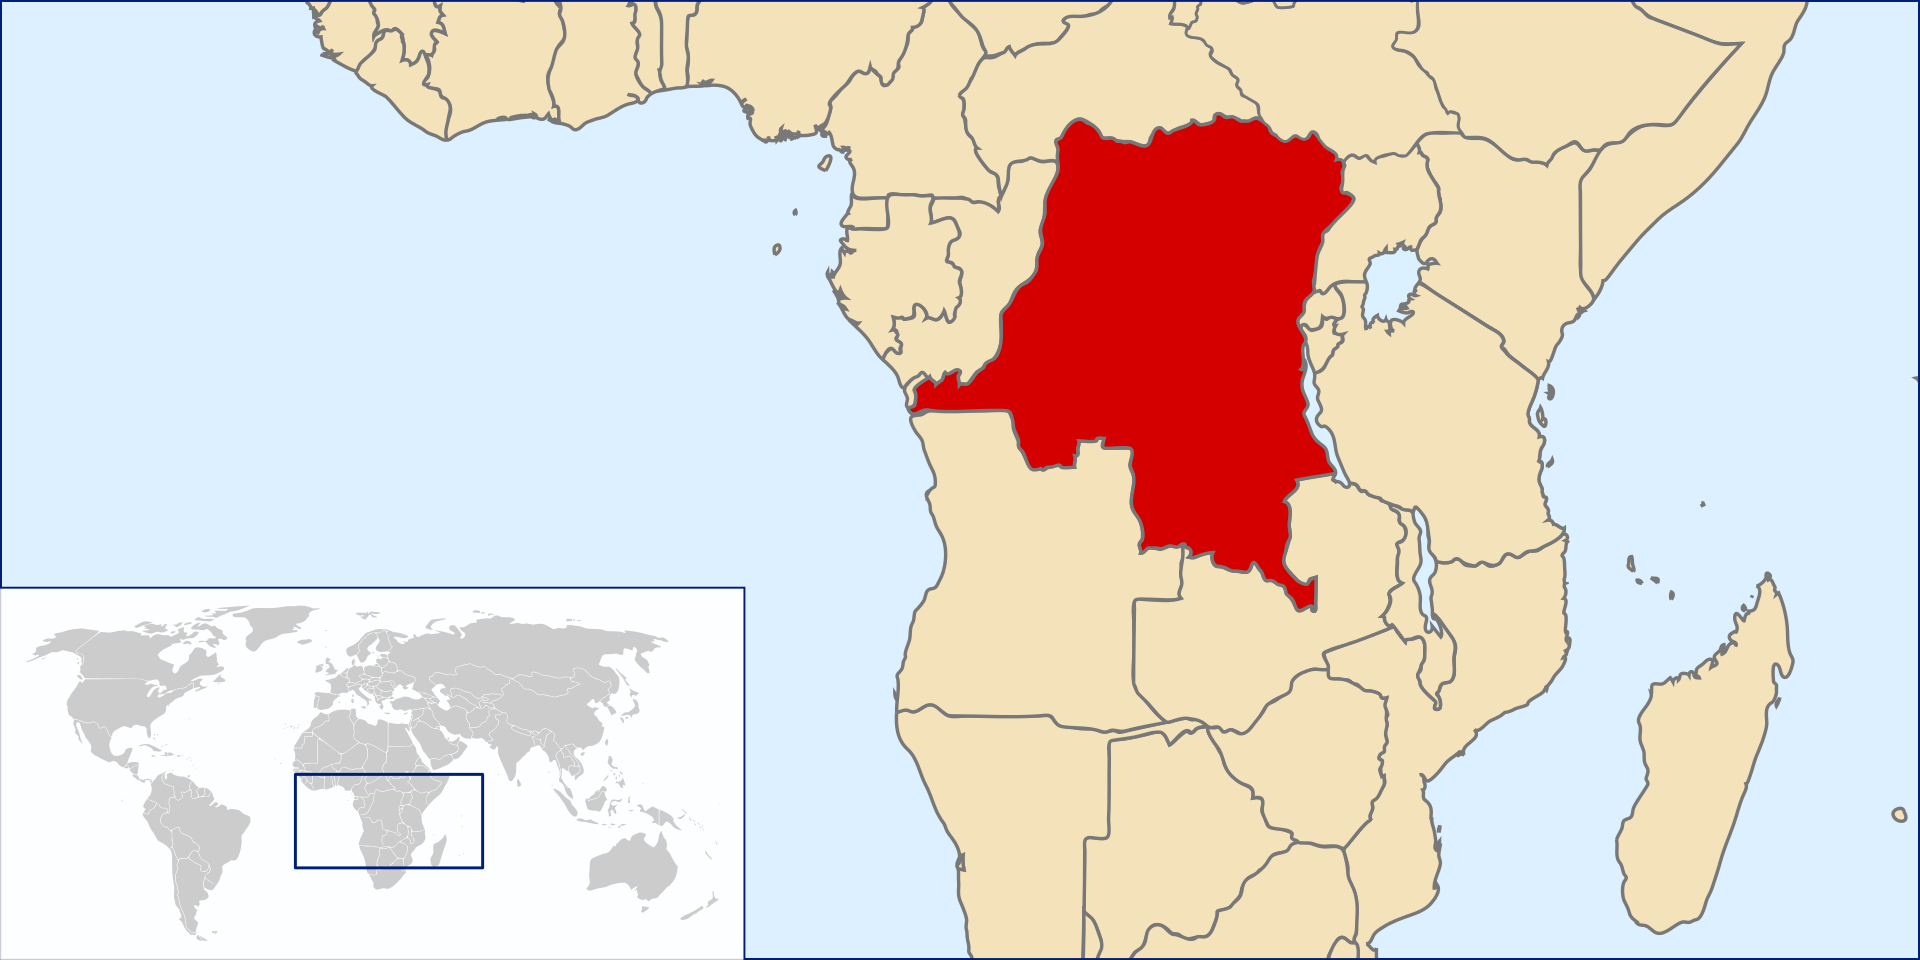 Congo, officieel de Democratische Republiek Congo, kortweg DRC (Frans: République démocratique du Congo), is een land in centraal Afrika.